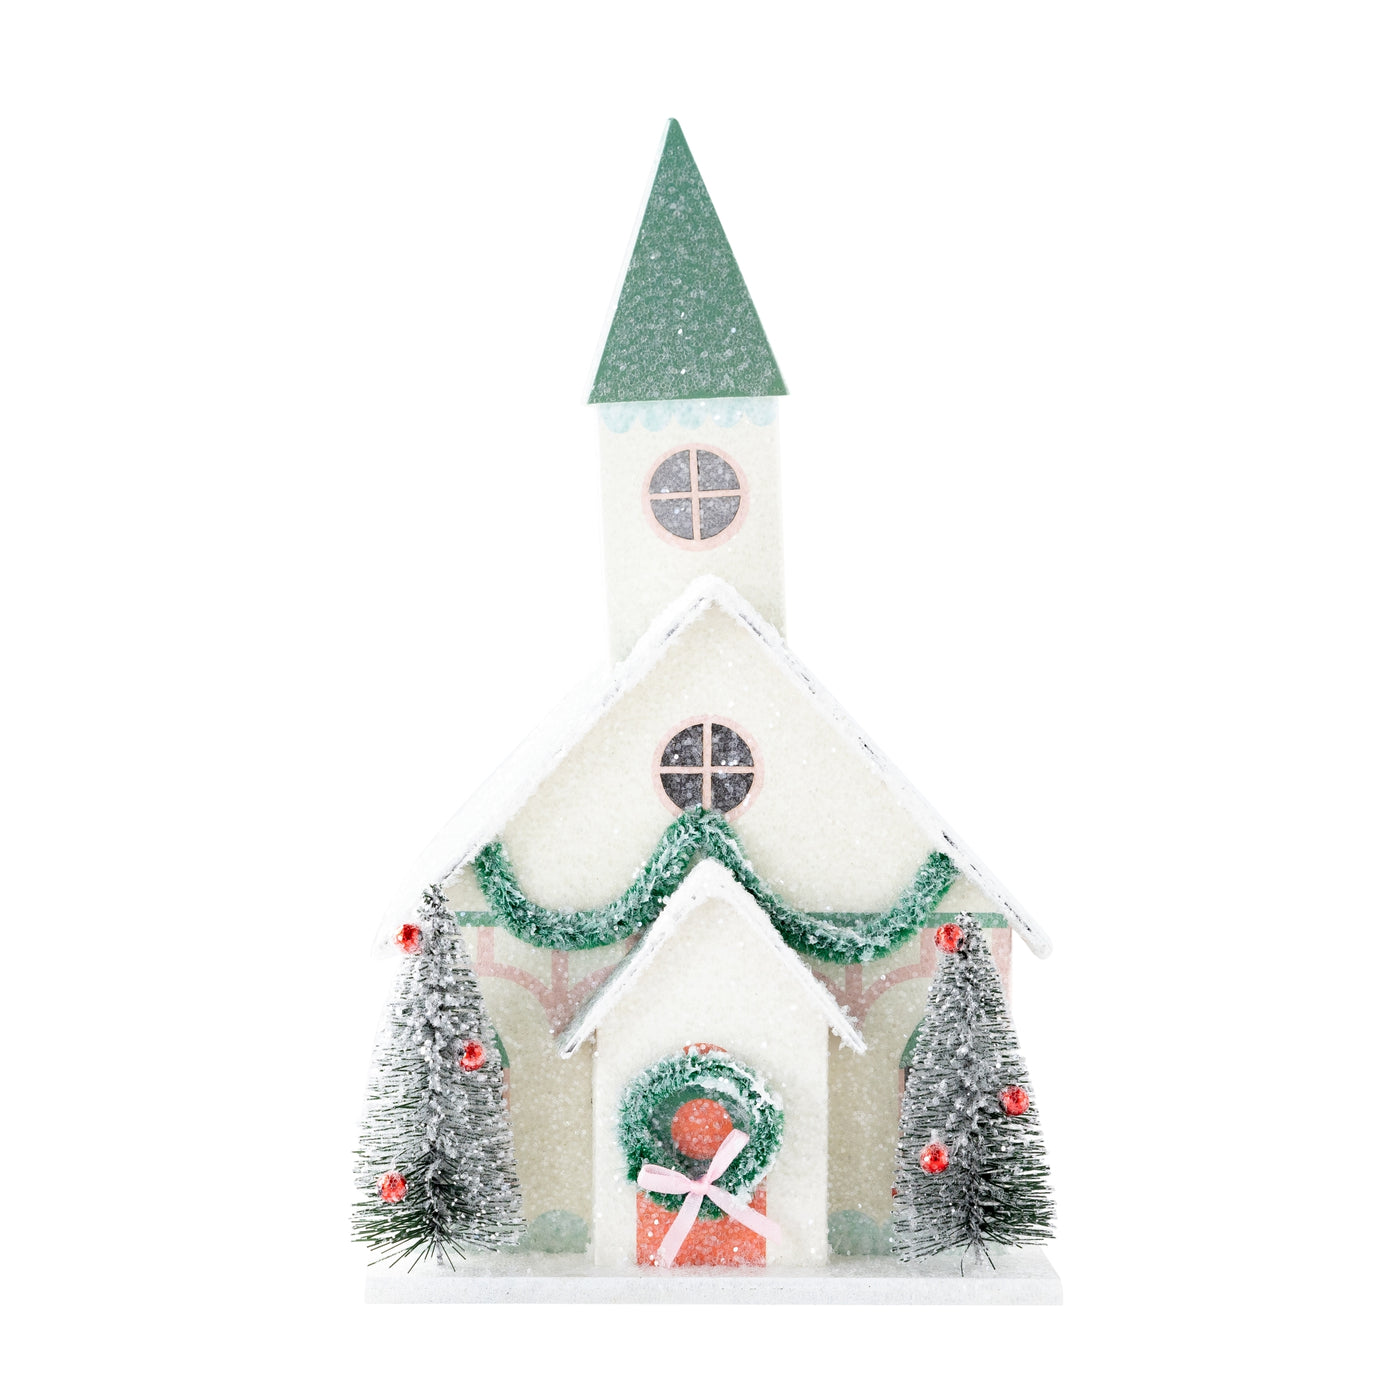 VIL1050 - Village Christmas Paper Church Decoration